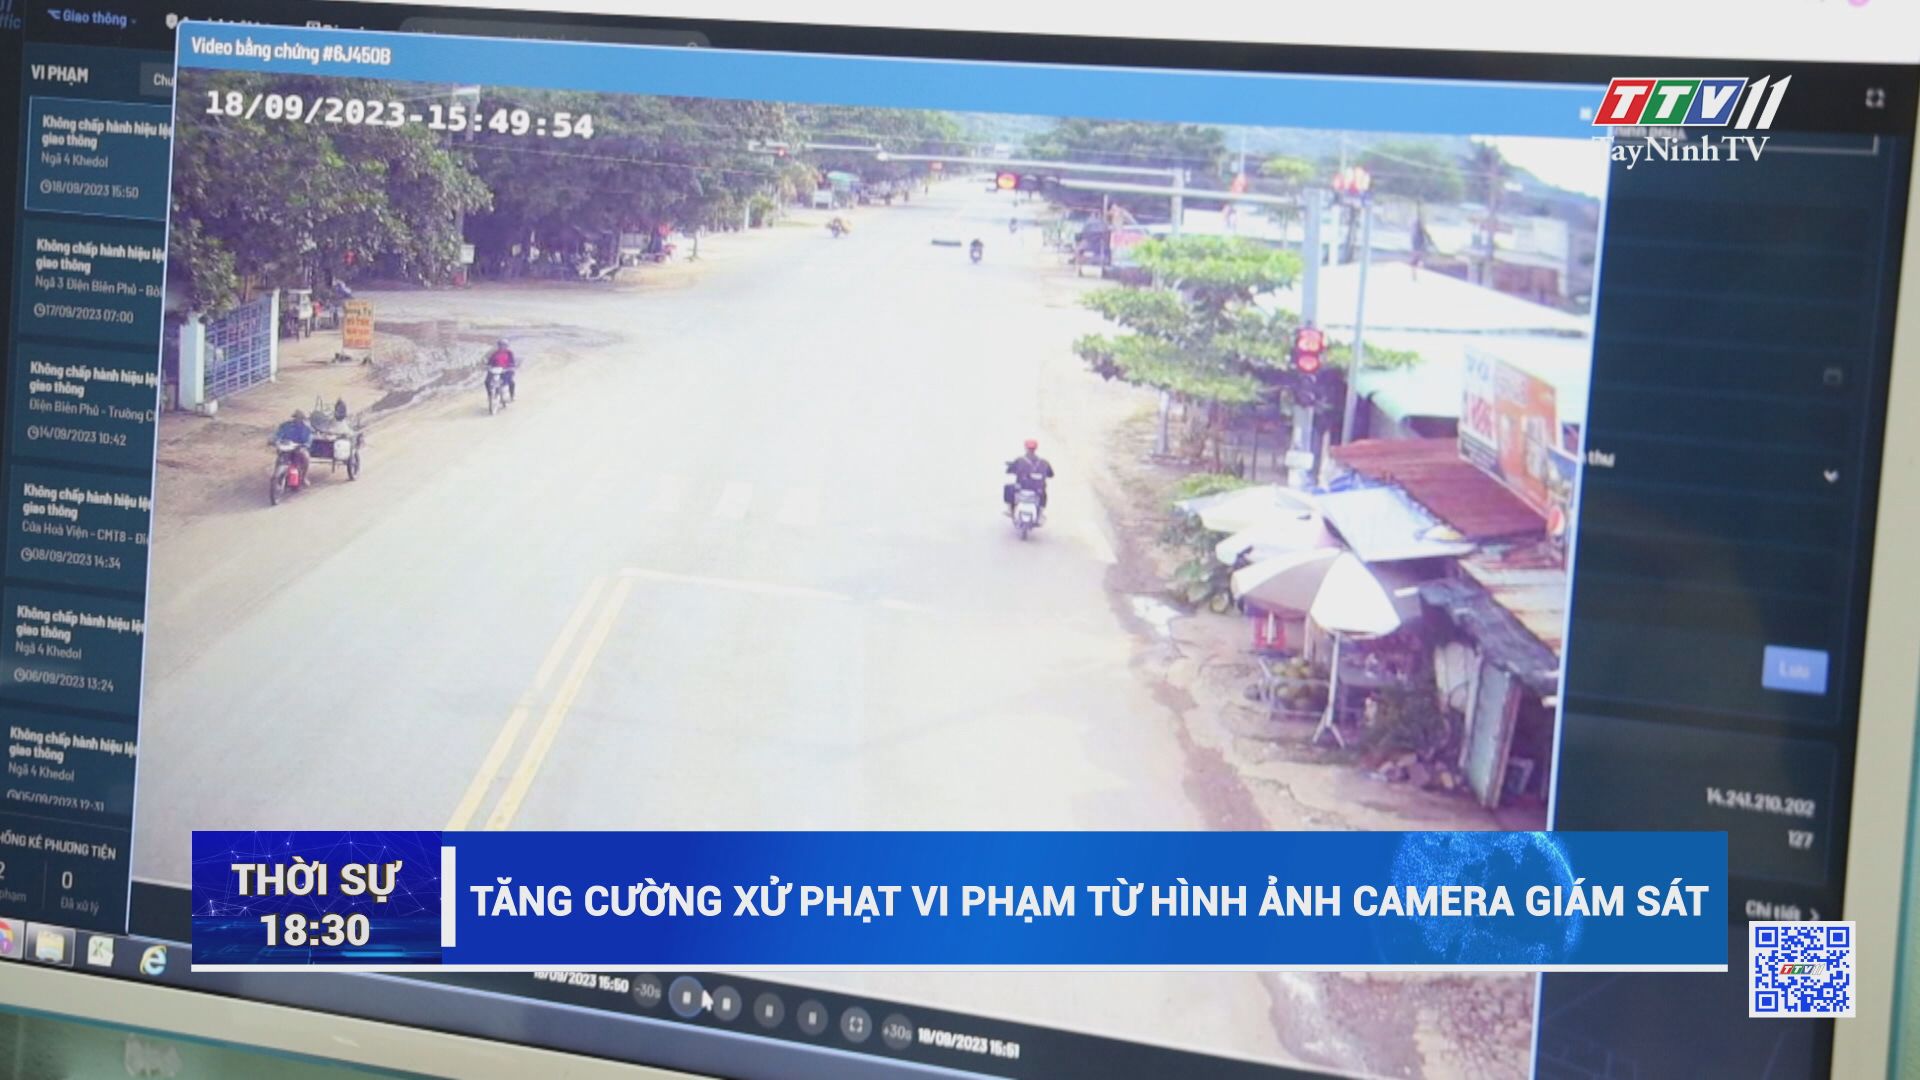 Tăng cường xử phạt vi phạm từ hình ảnh camera giám sát | TayNinhTV